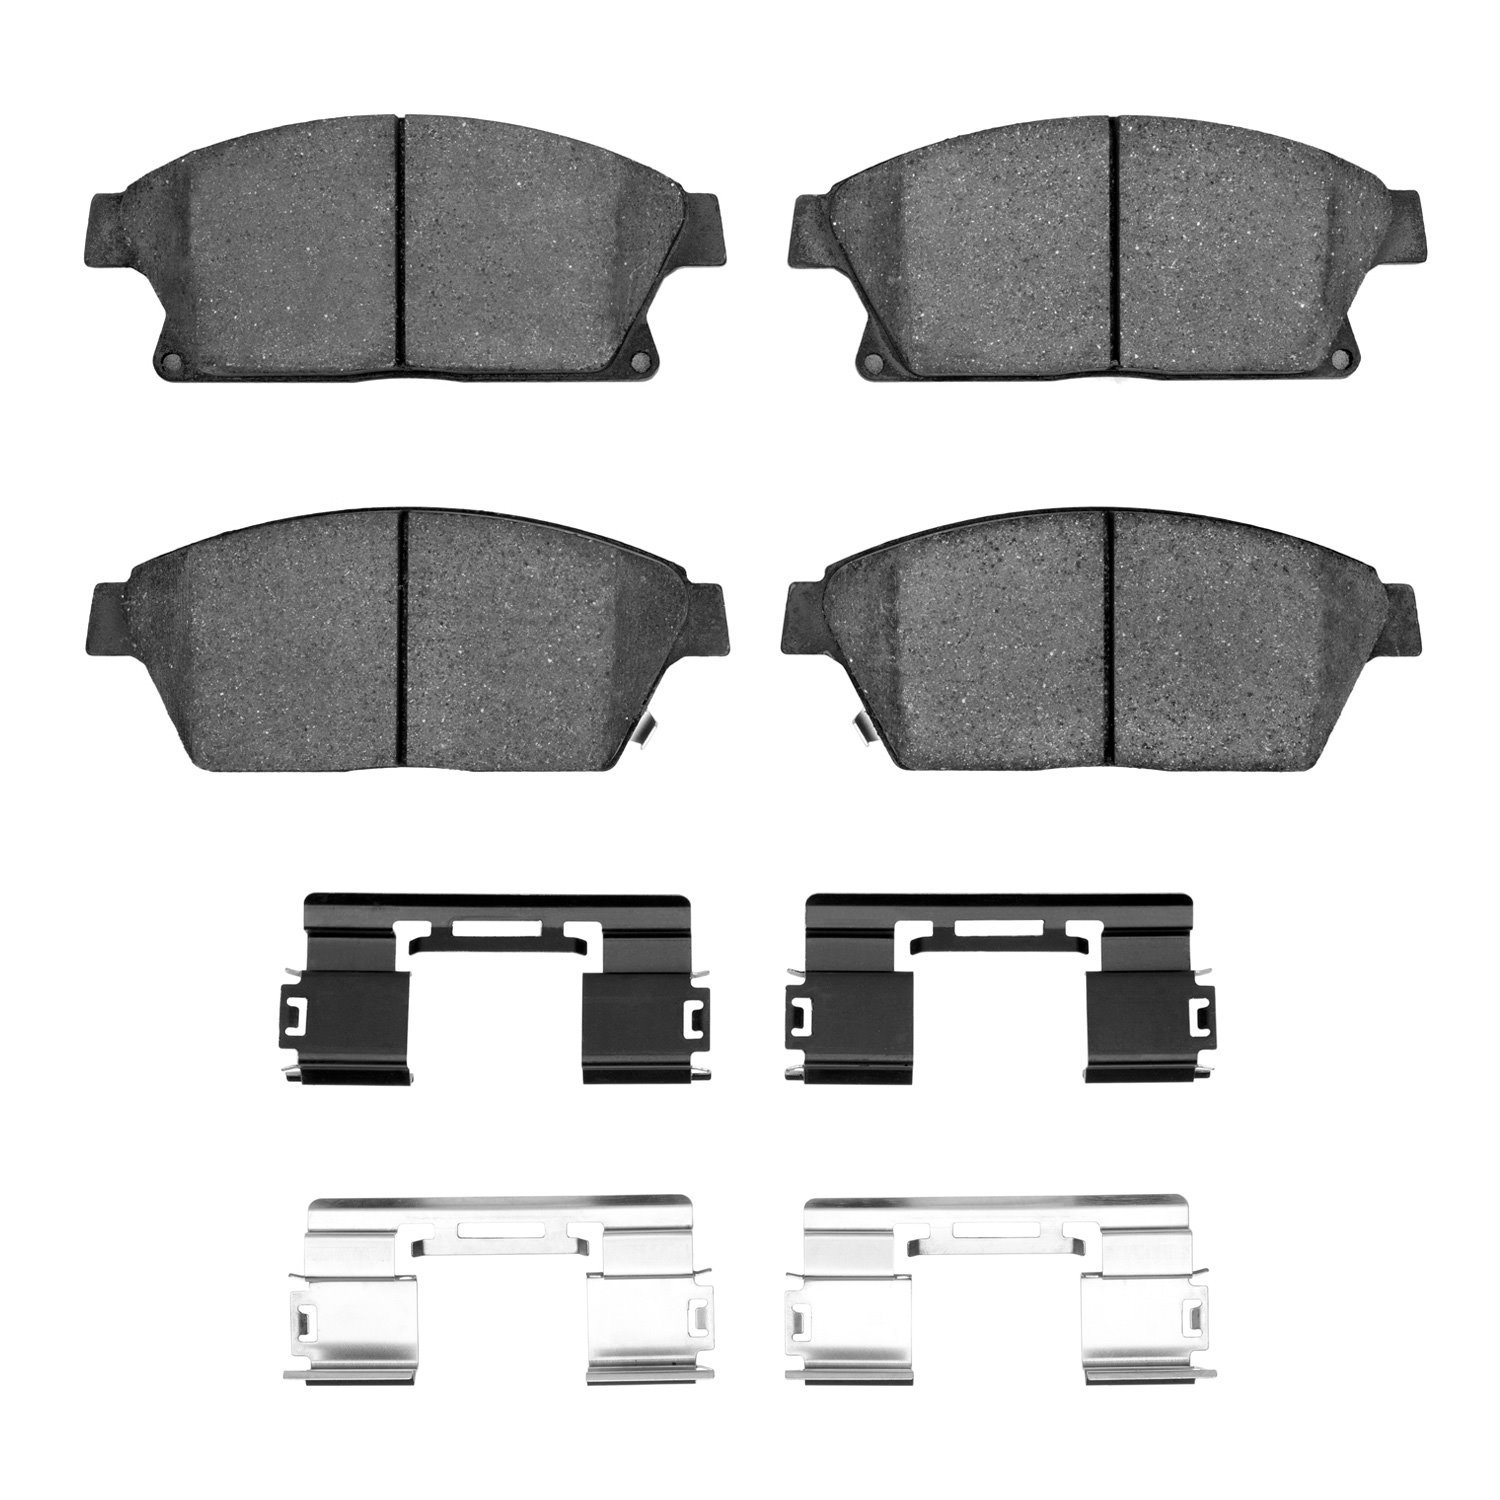 1310-1467-01 3000-Series Ceramic Brake Pads & Hardware Kit, 2011-2019 GM, Position: Front